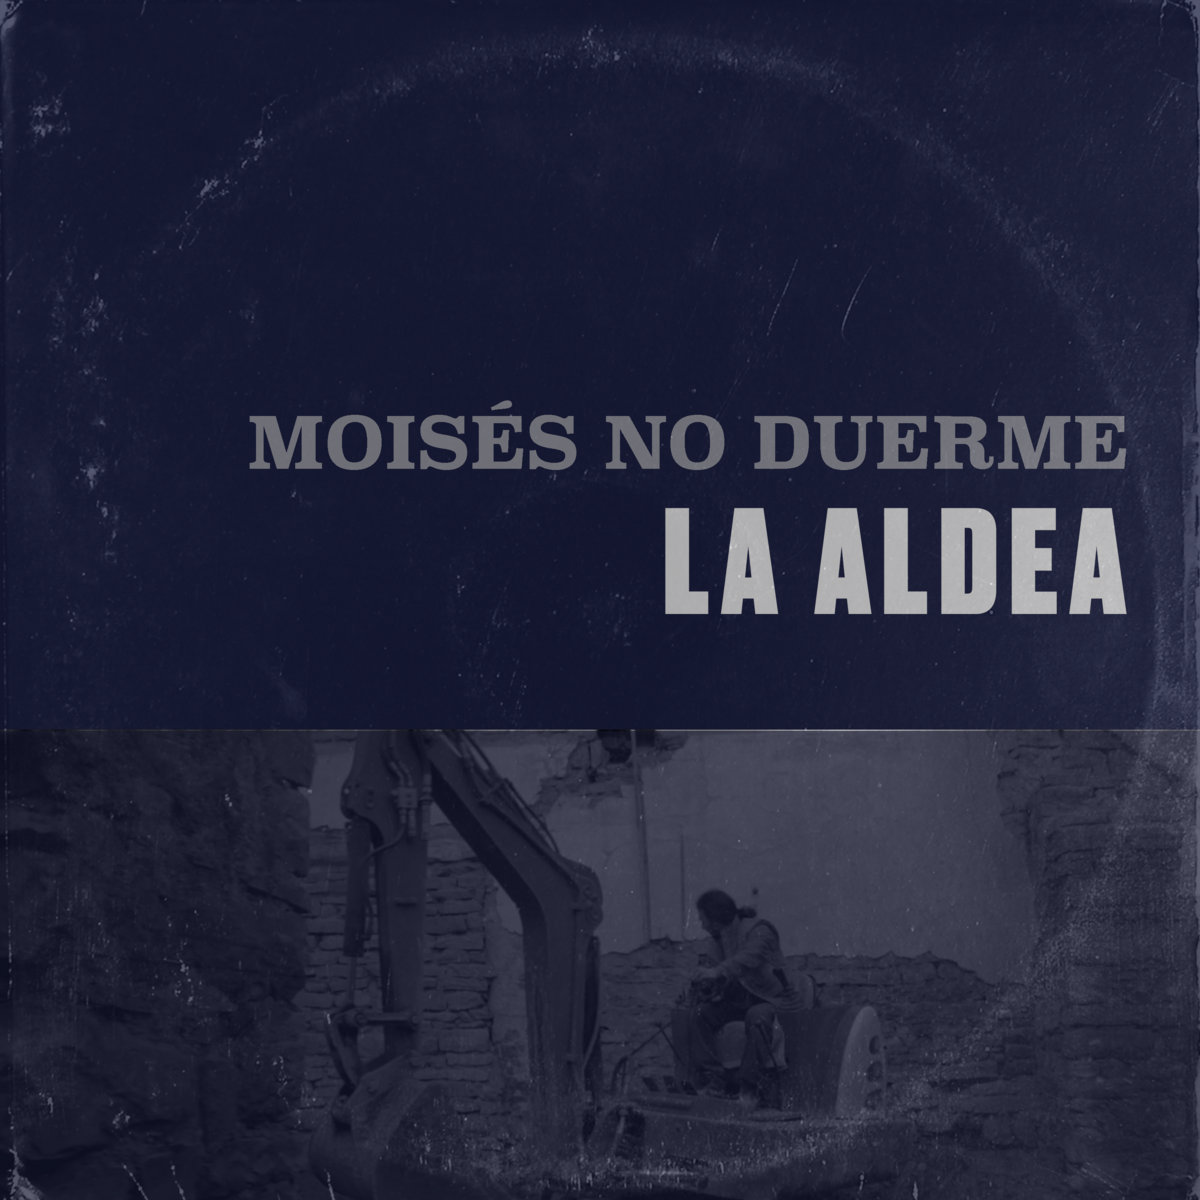 Moises_no_duerme_la_aldea